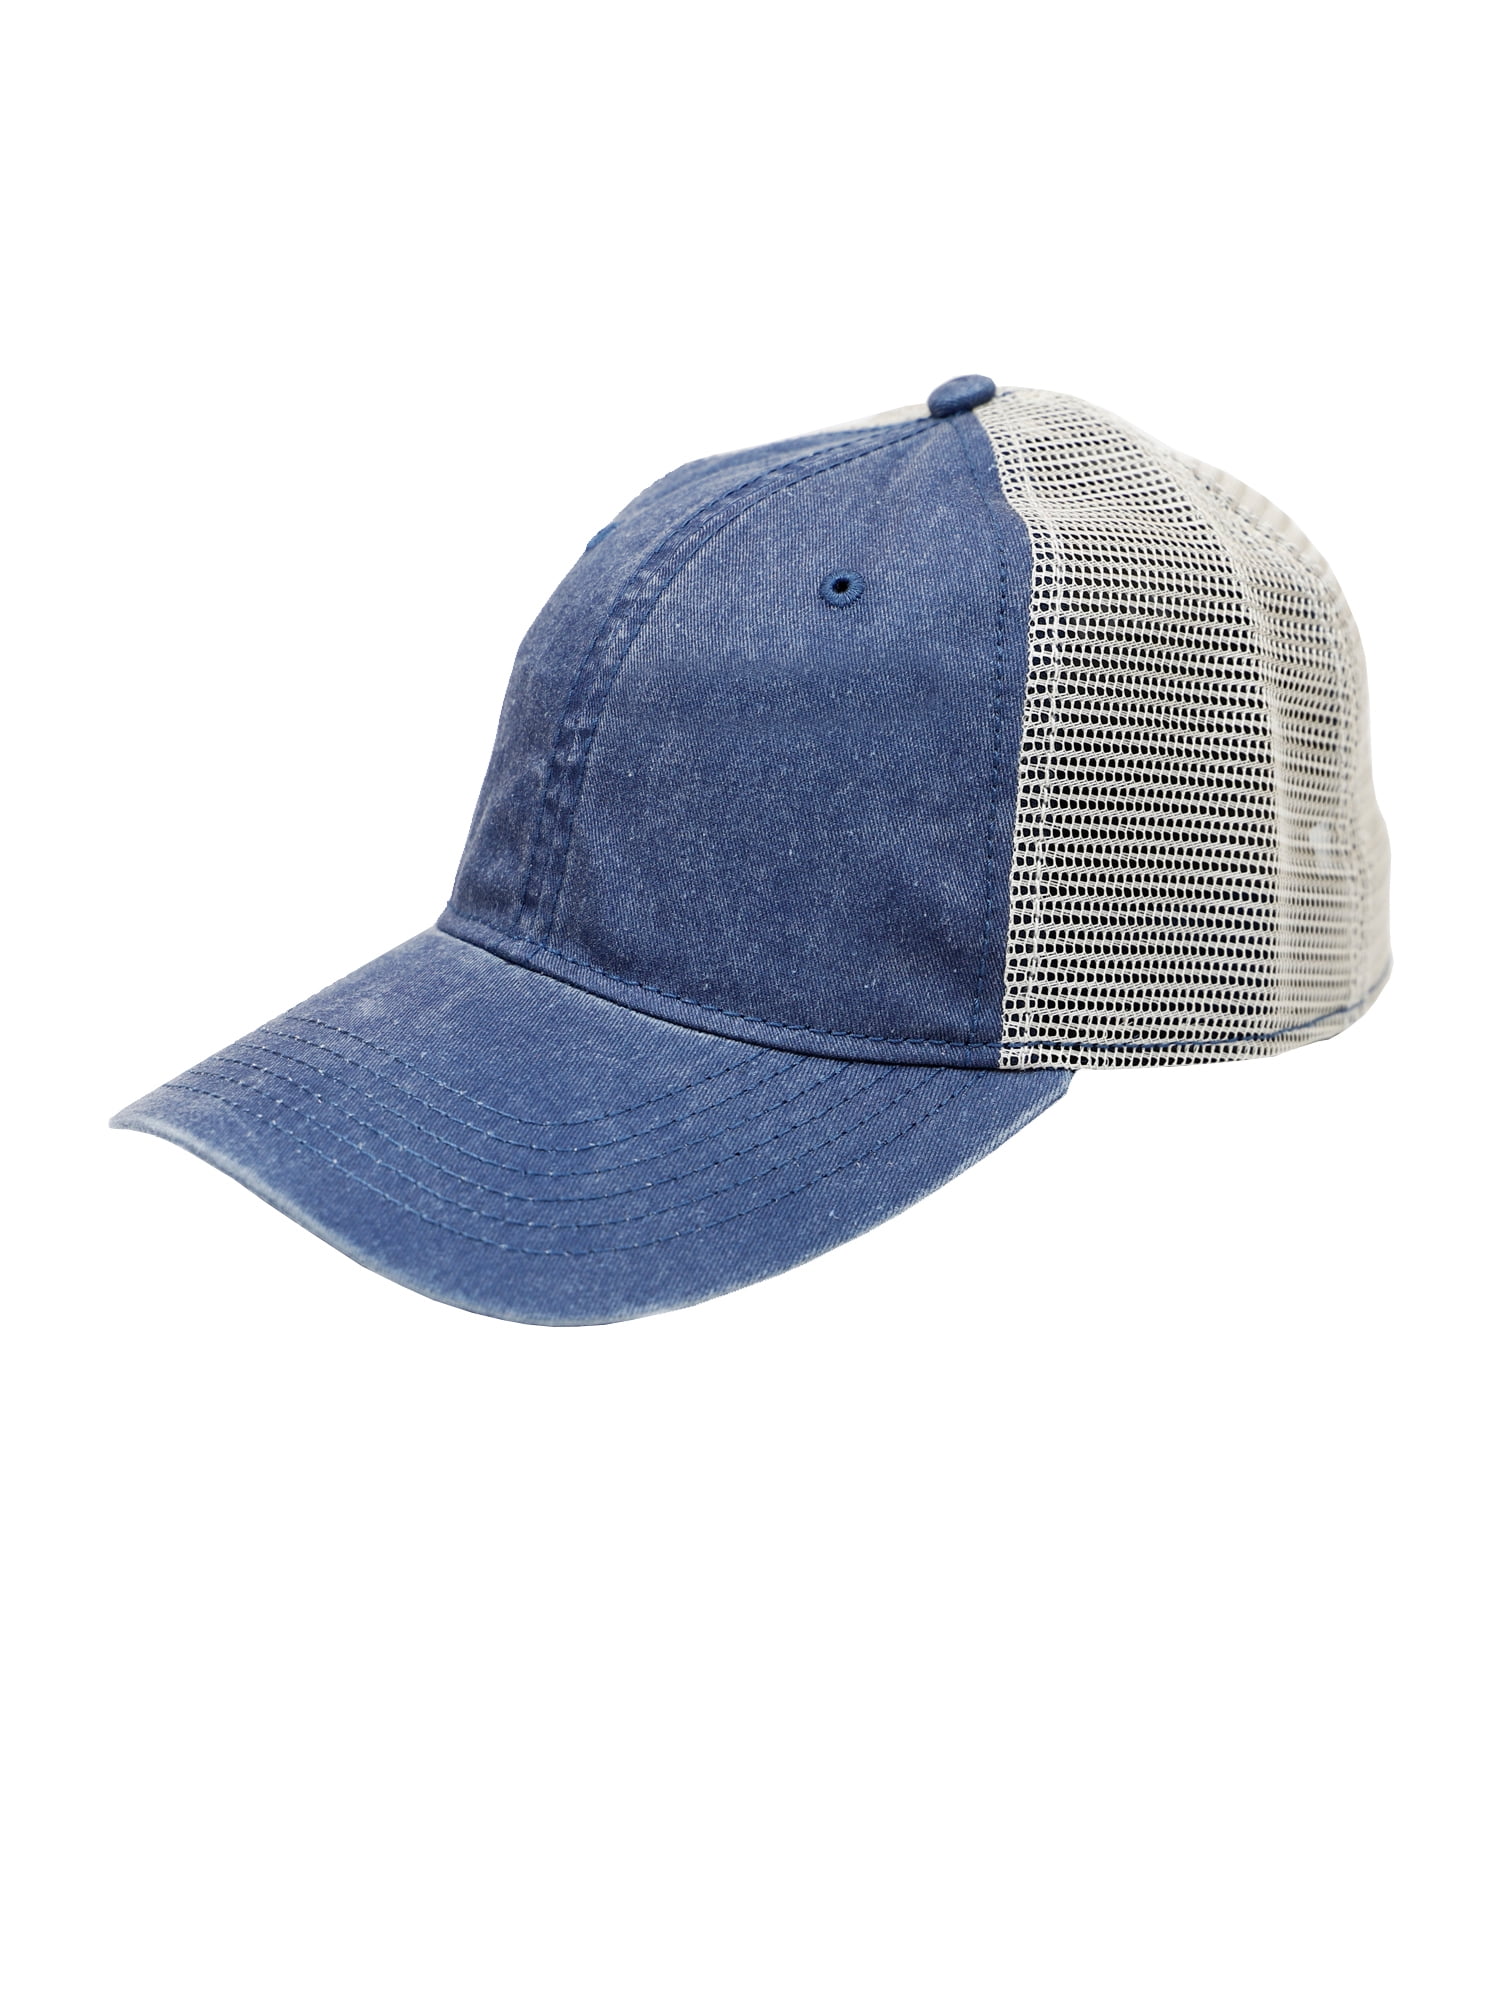 George Men's Pigment Blue Hat